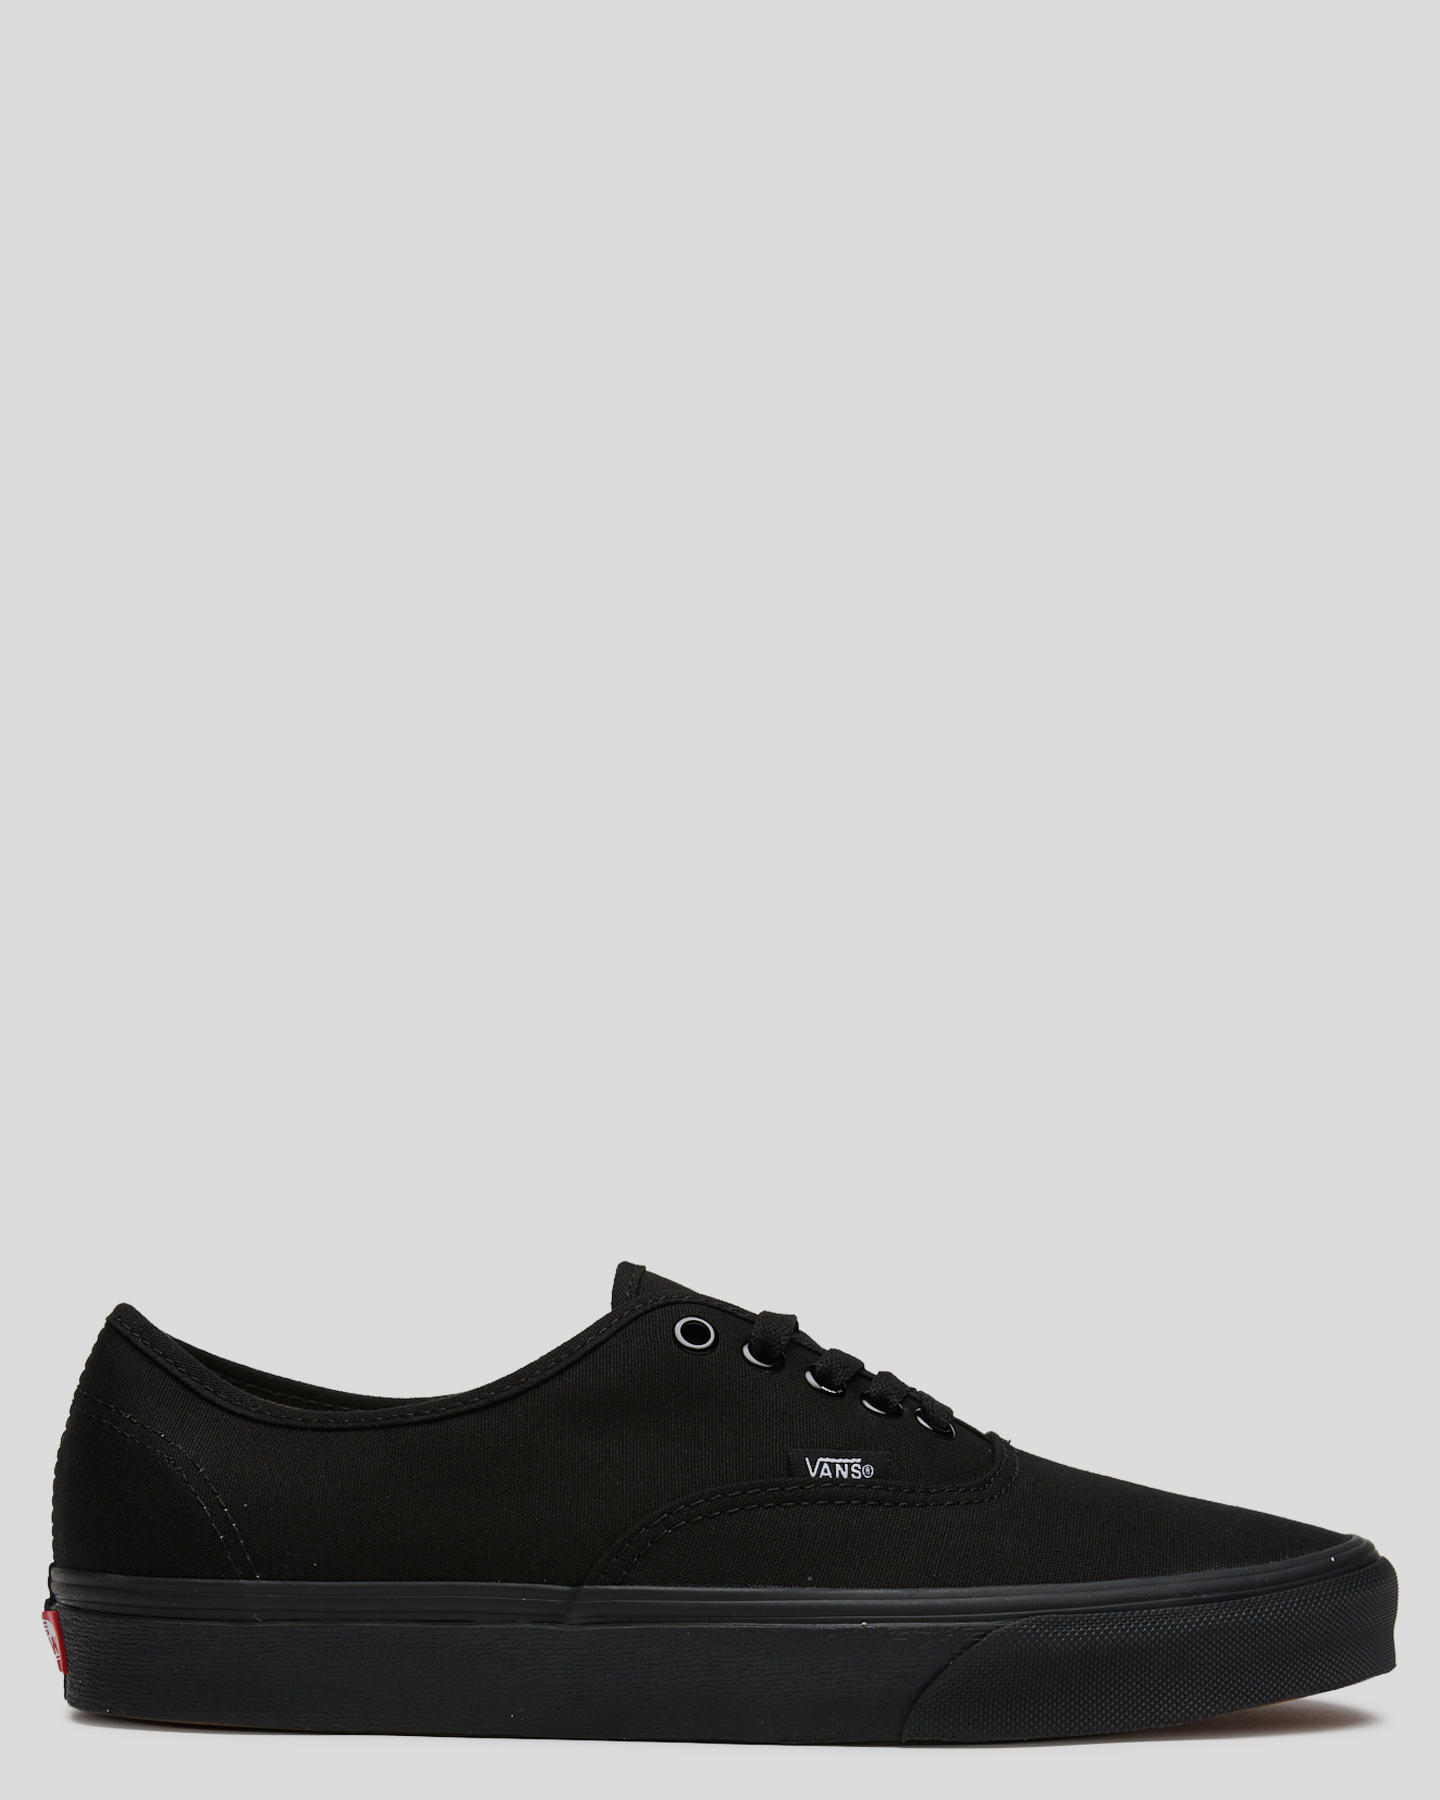 Vans Authentic Shoe - Black/Black 